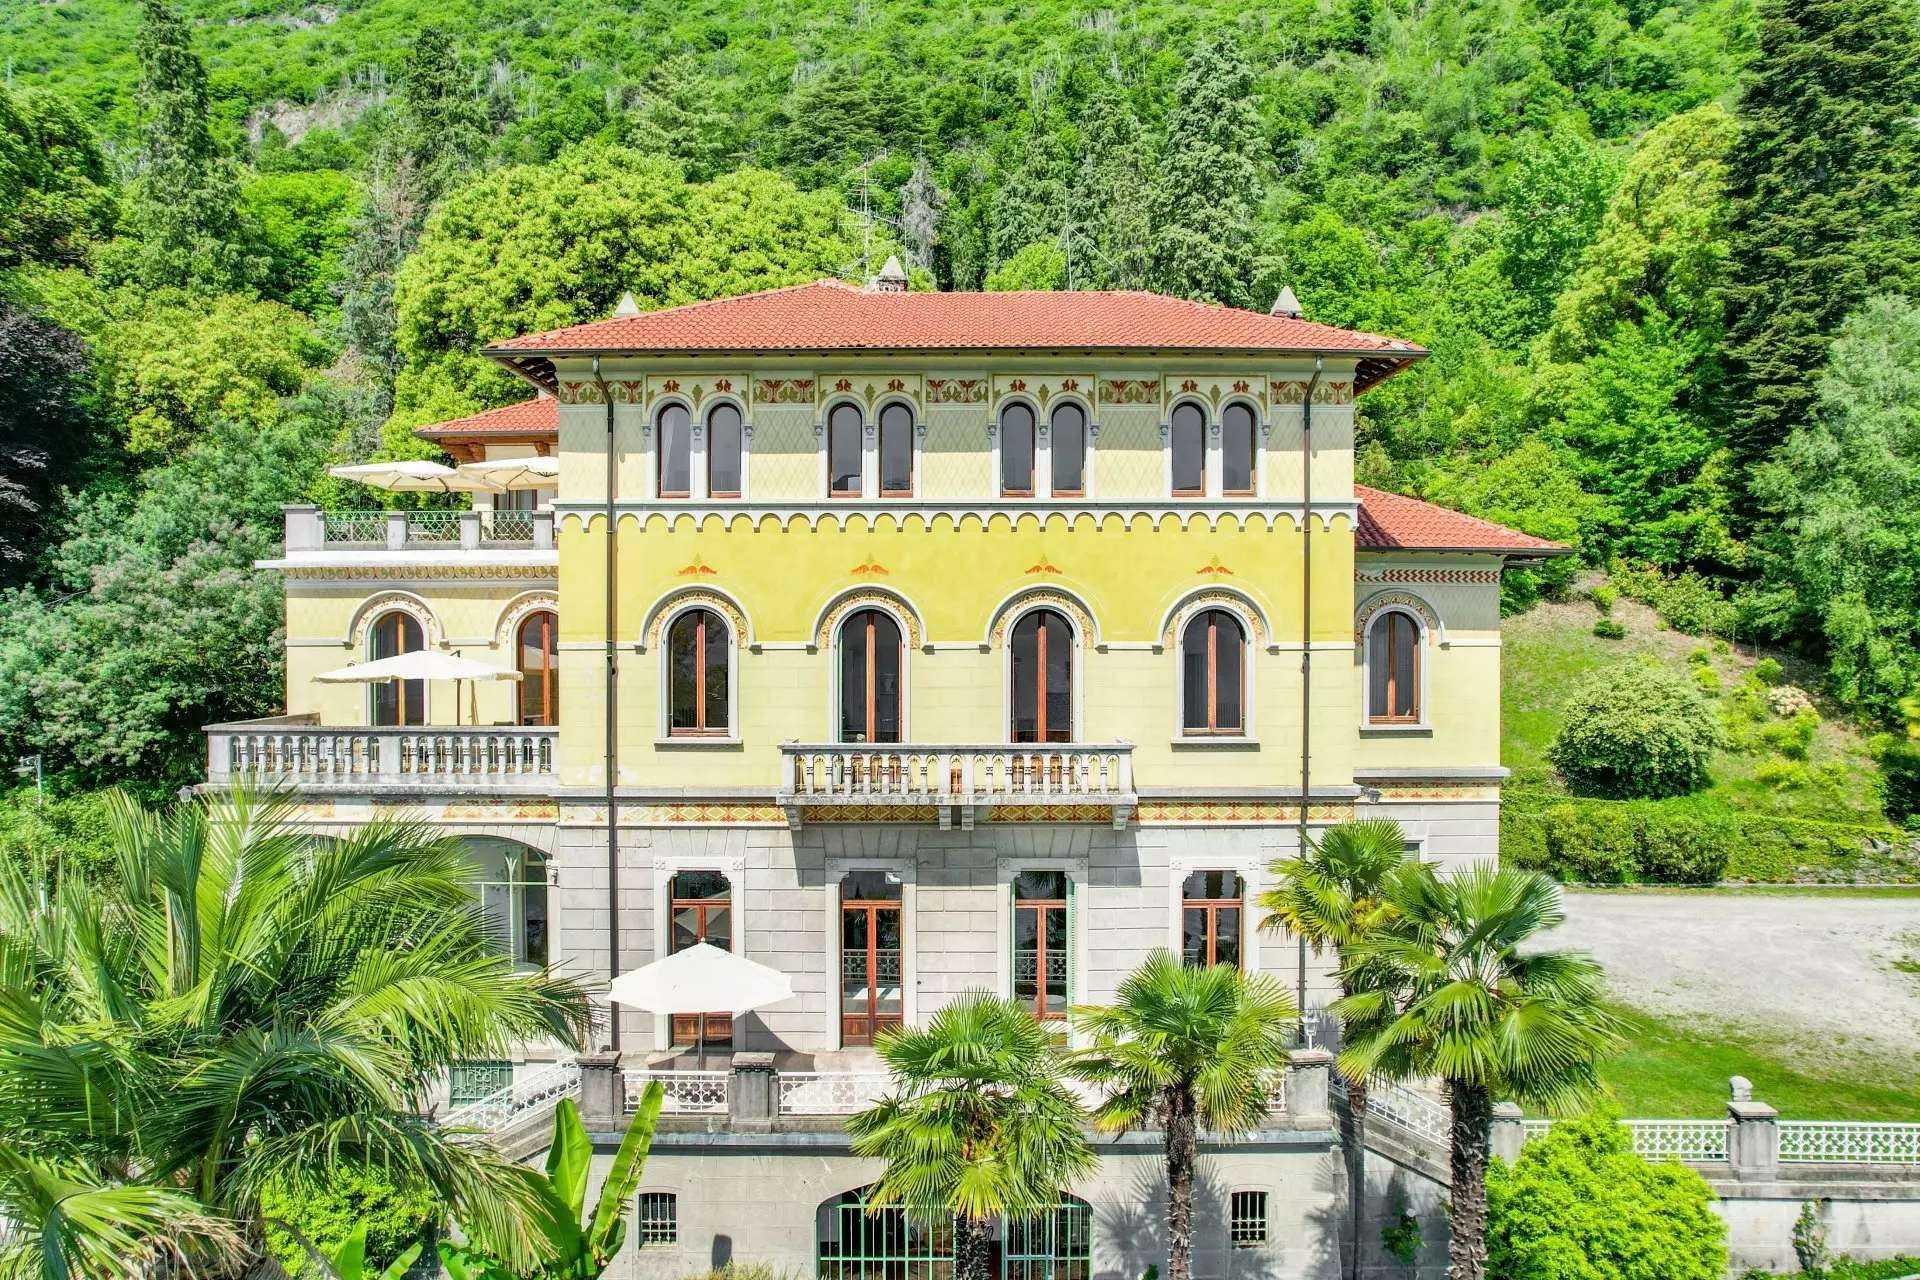 Photos Period villa in Ghiffa on Lake Maggiore